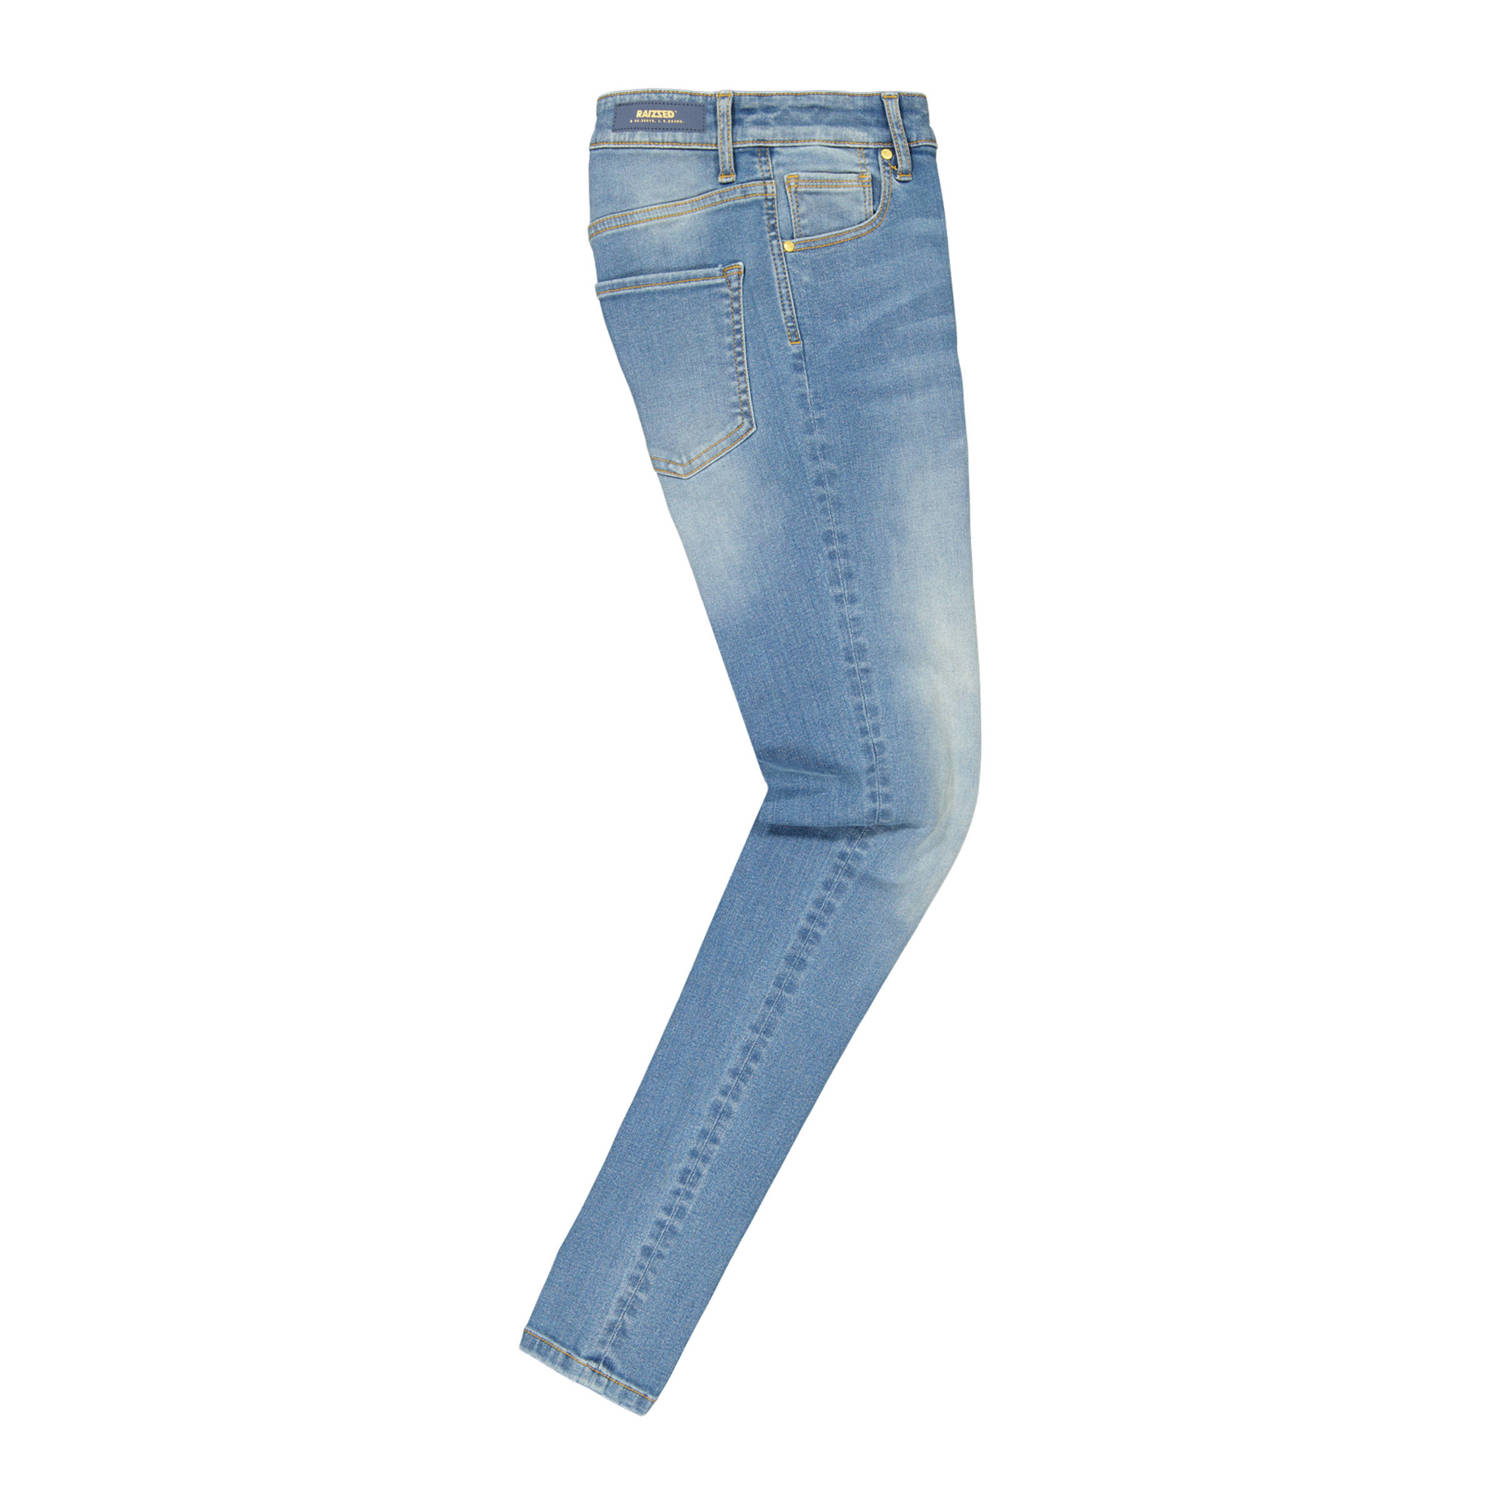 Raizzed high waist skinny jeans Blossom light blue denim